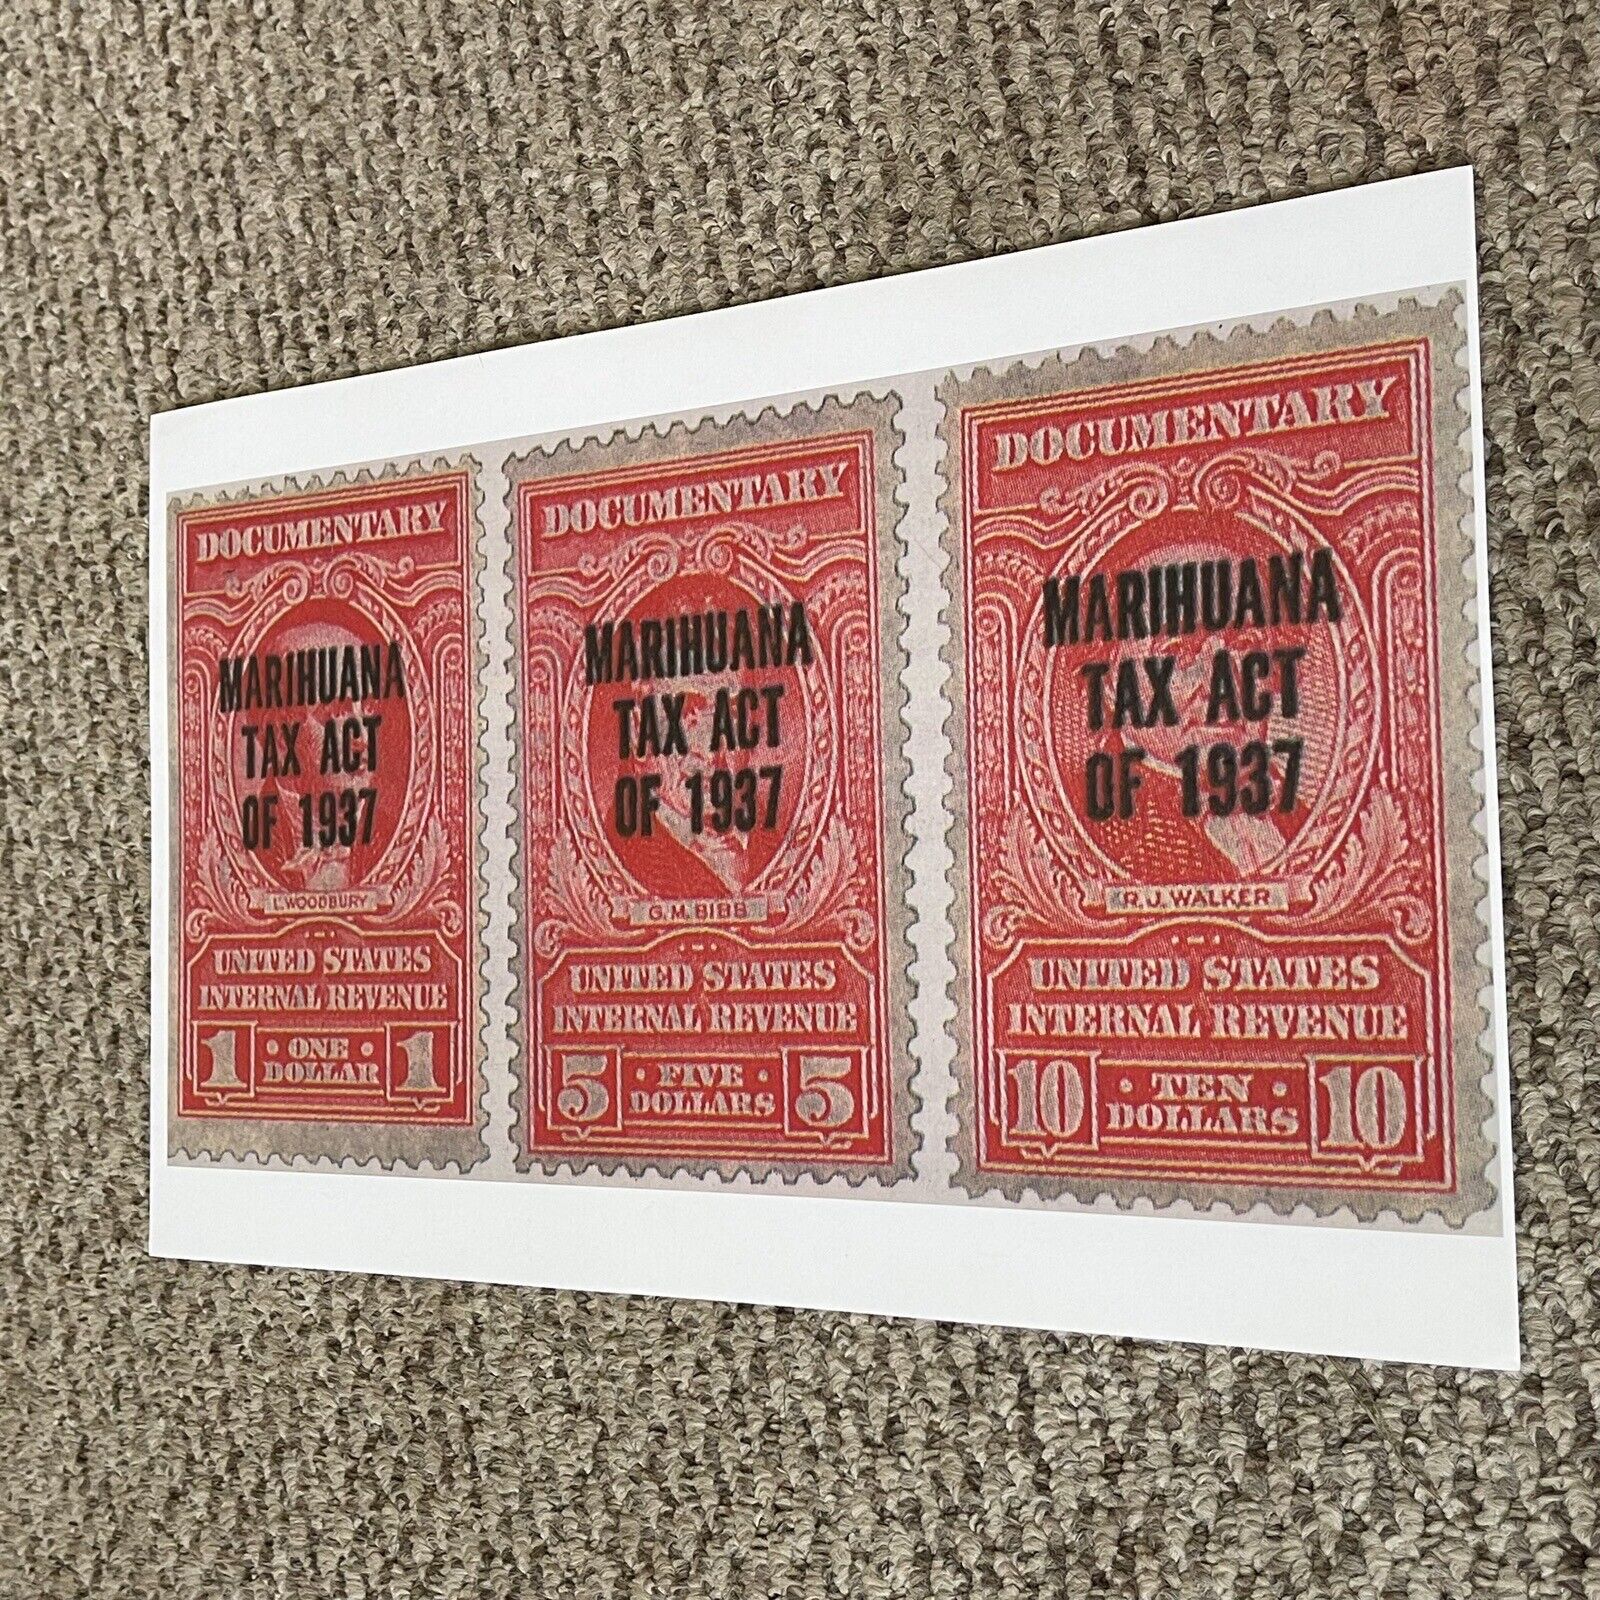 Marihuana Tax Act Of 1937 Poster 11 x 17 (272)